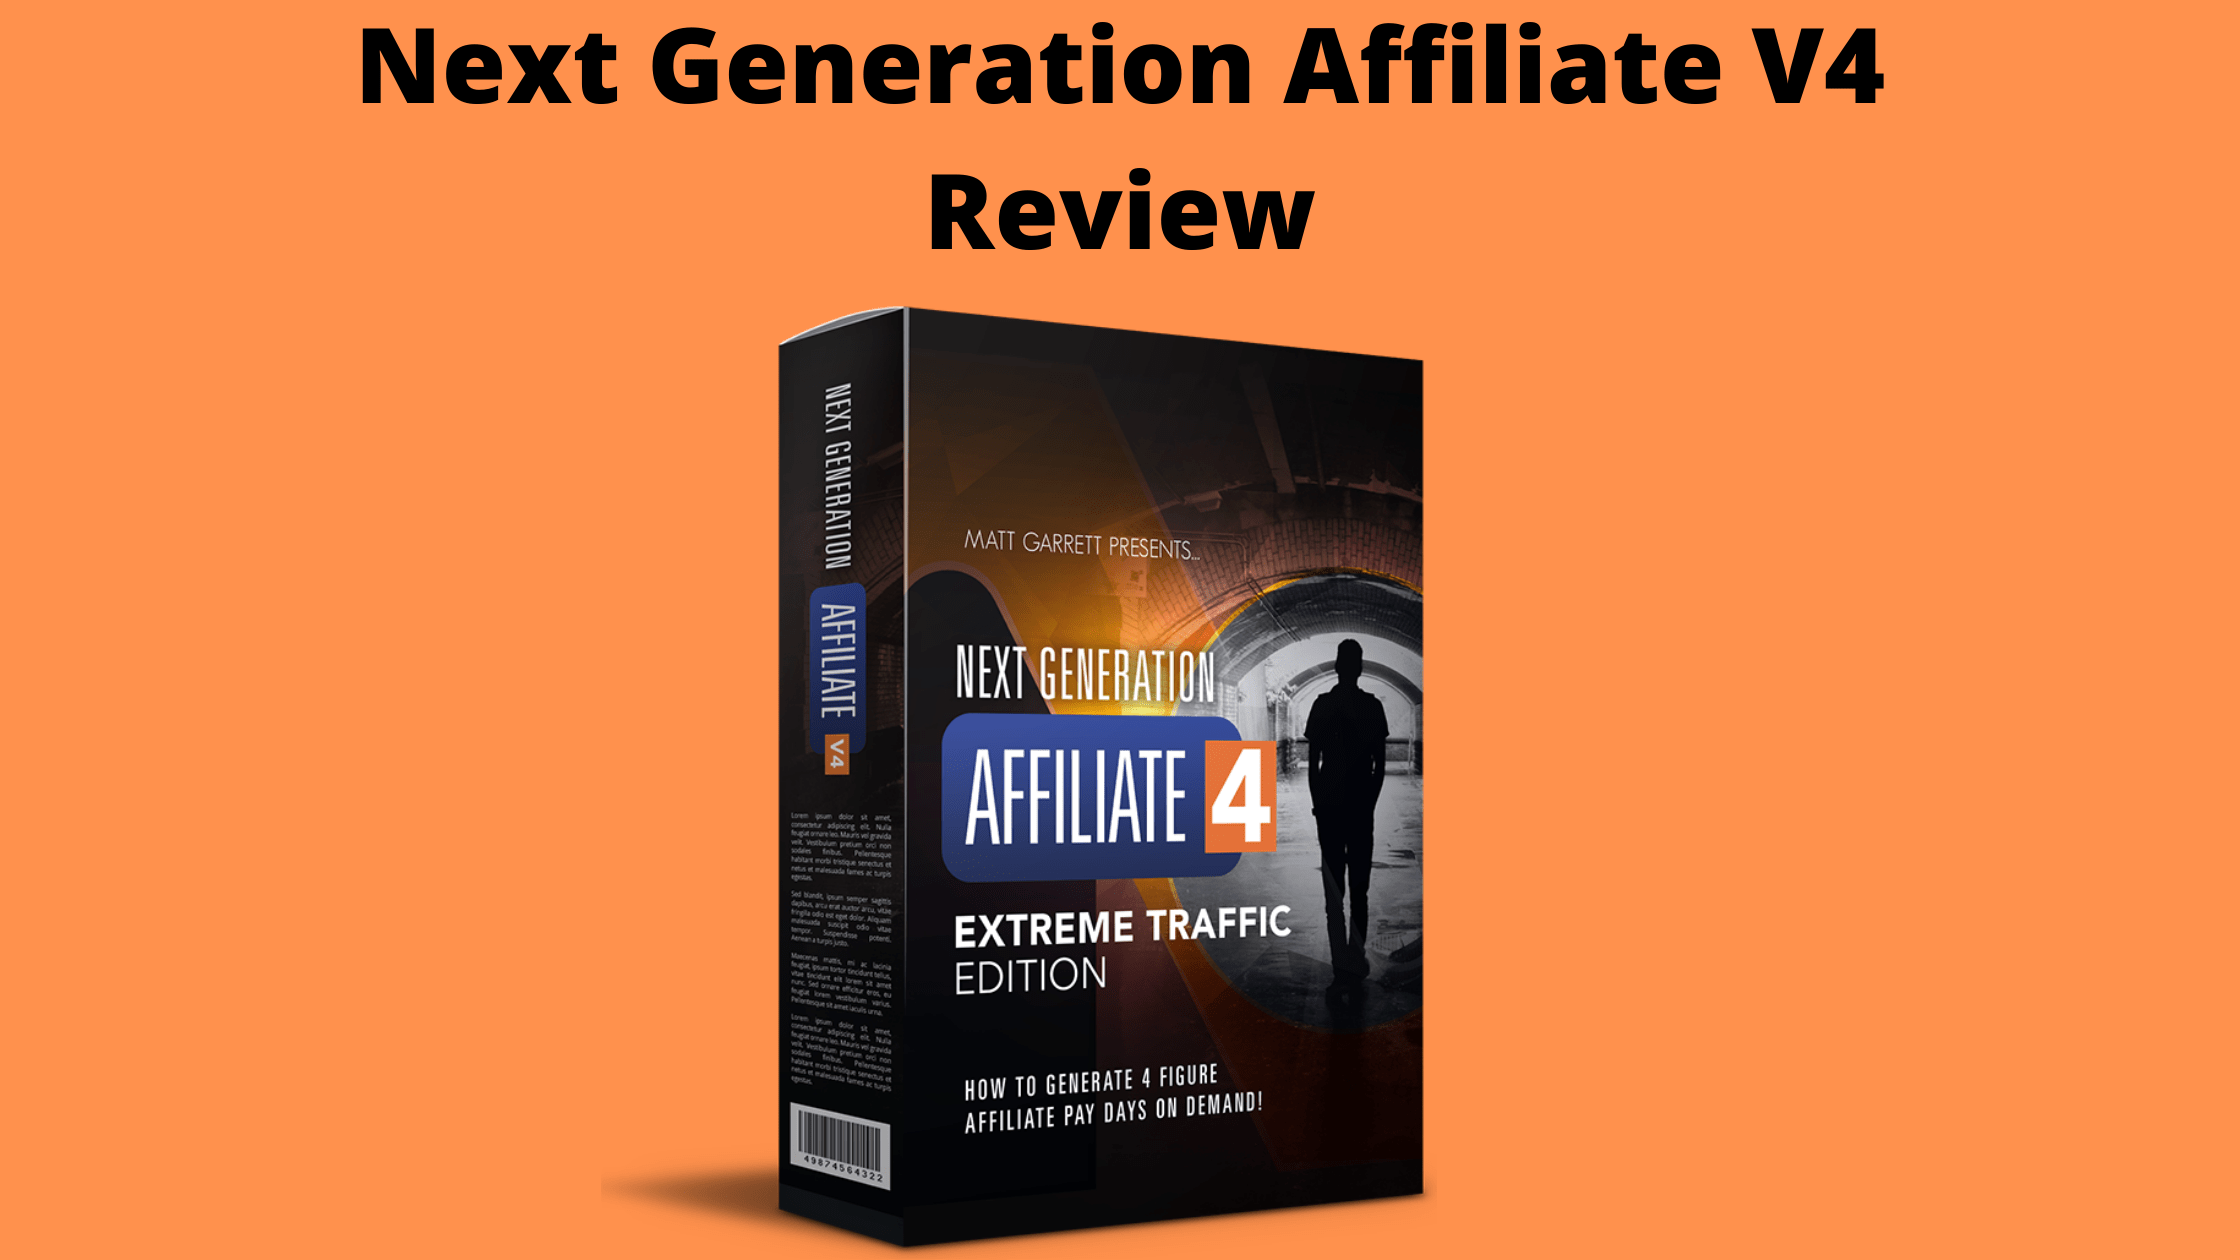 Next Generation Affiliate V4 Review